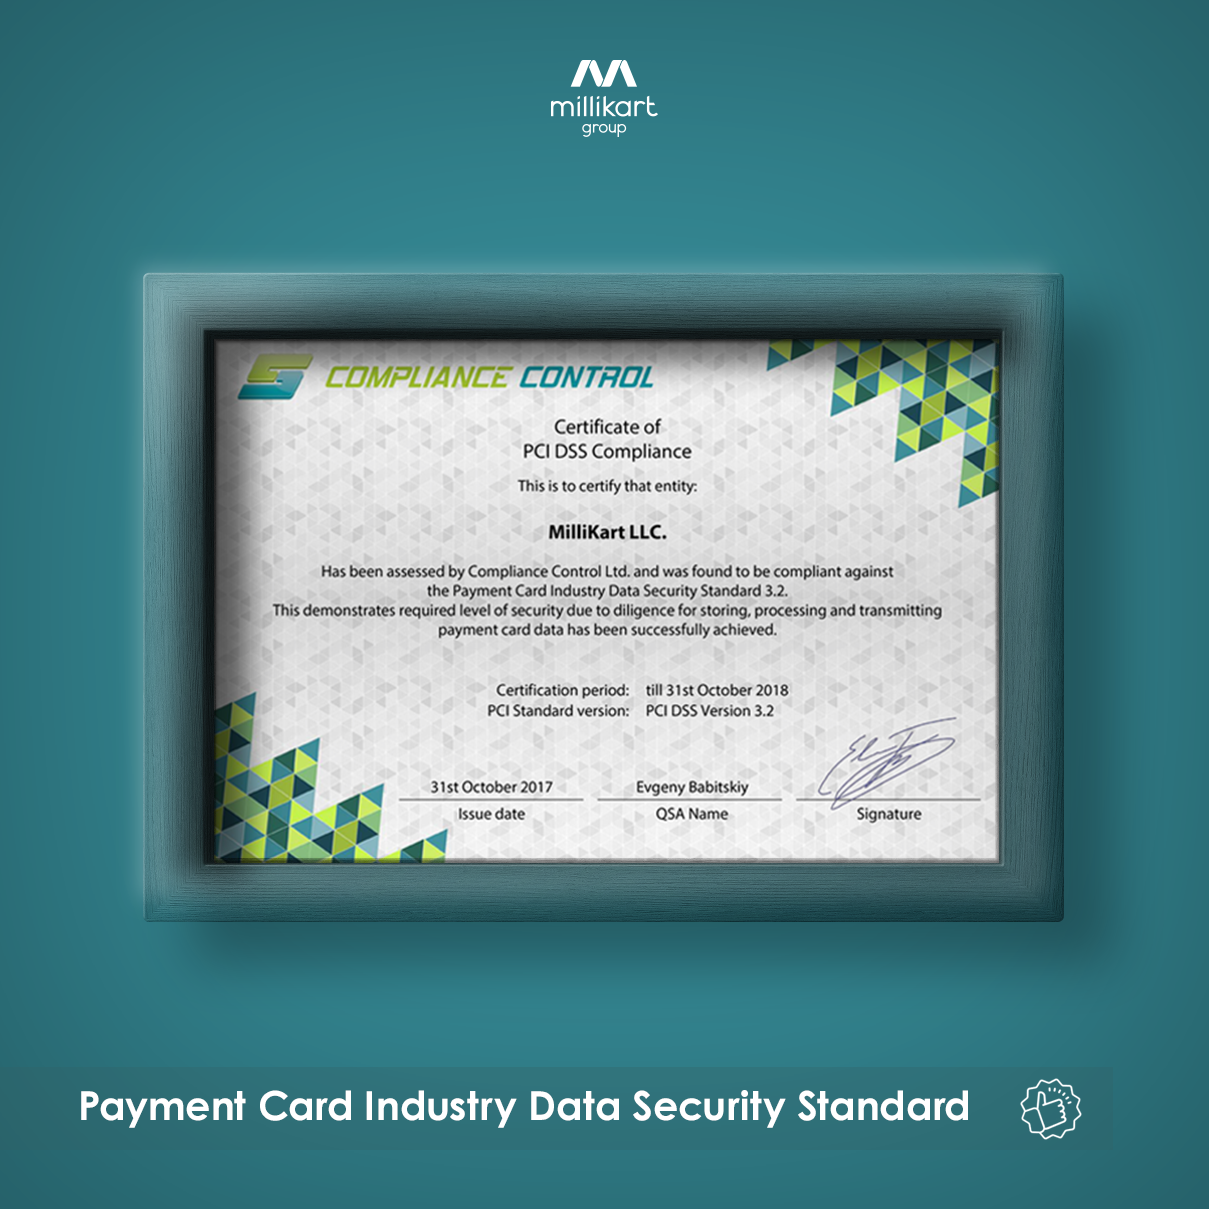 МИЛЛИКАРТ ПРОШЕЛ СЕРТИФИКАЦИЮ ПО (PCI DSS 3.2) PAYMENT CARD INDUSTRY DATA SECURITY STANDARDS